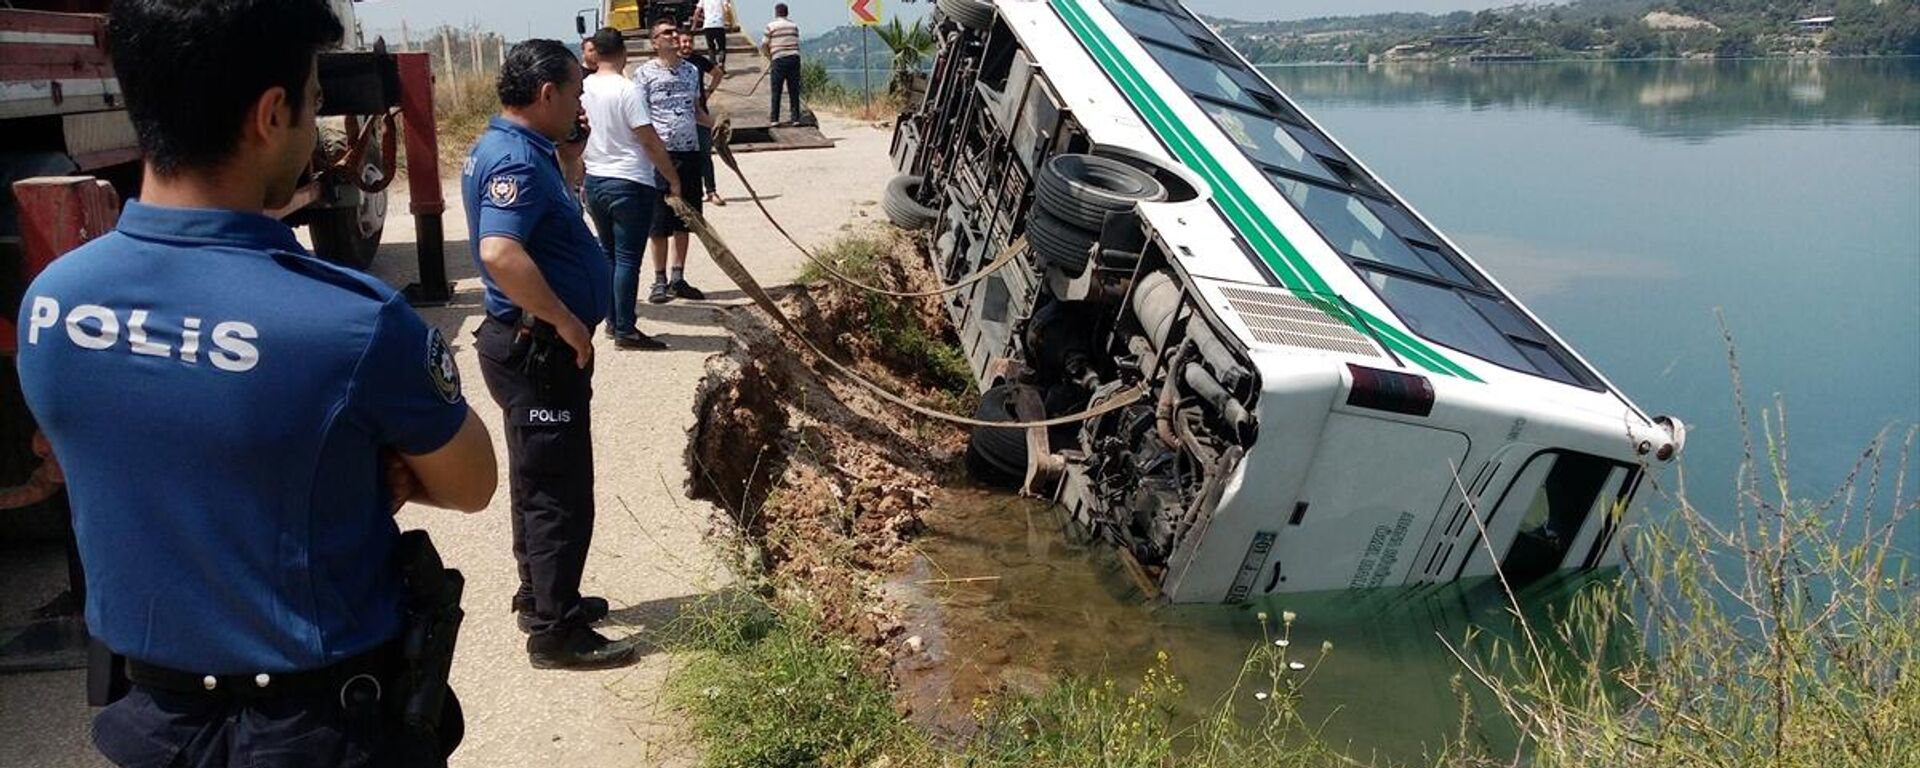 Adana'da özel halk otobüsü yolun çökmesi sonucu göle devrildi - Sputnik Türkiye, 1920, 03.05.2022